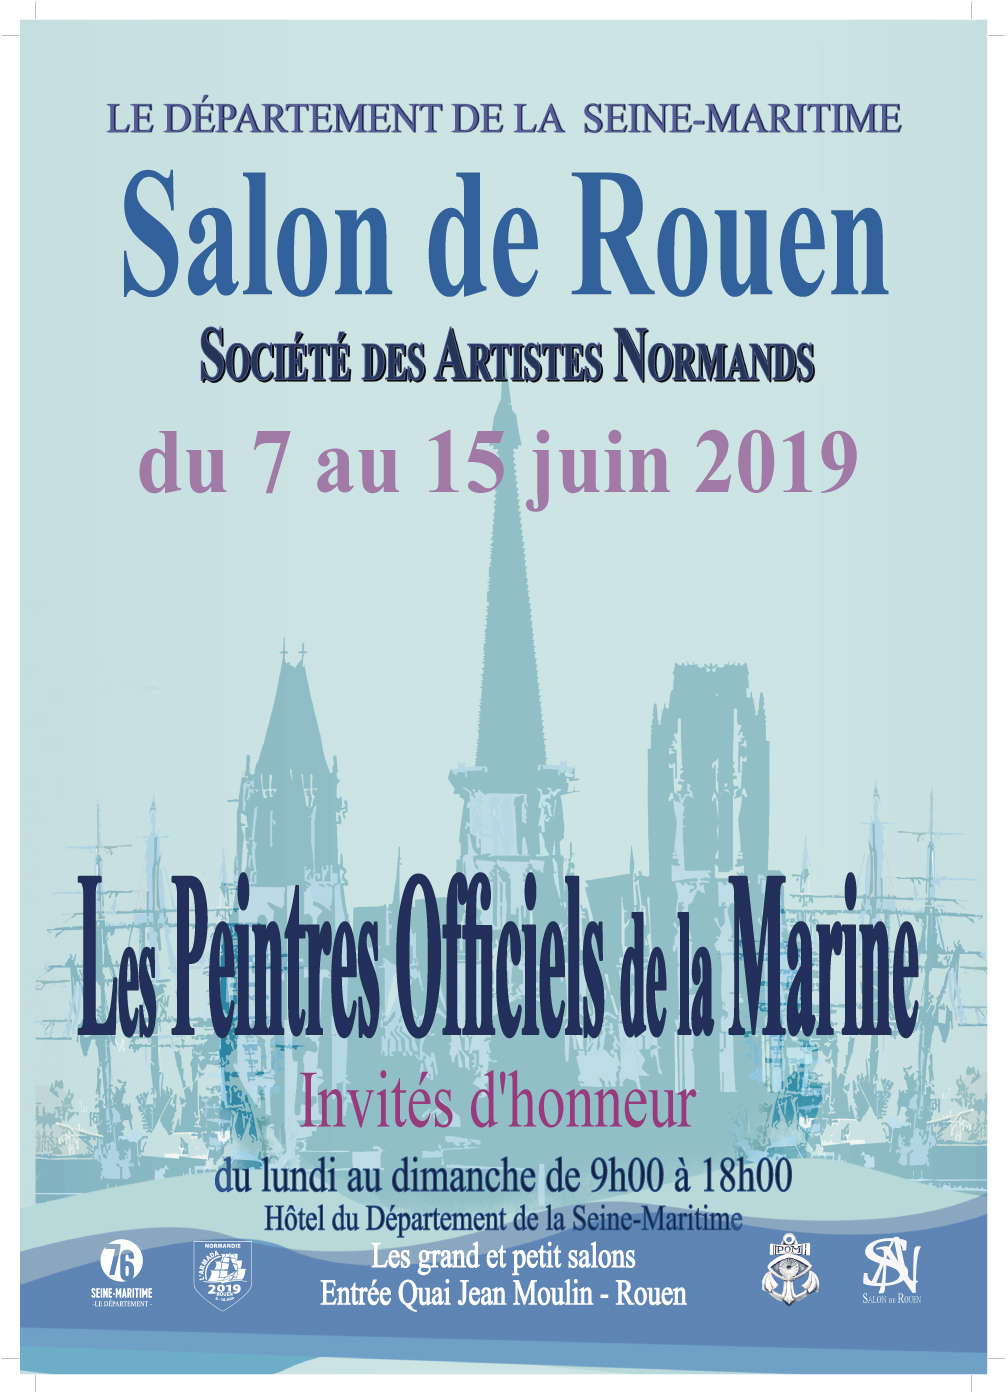 Salon de Rouen 2019